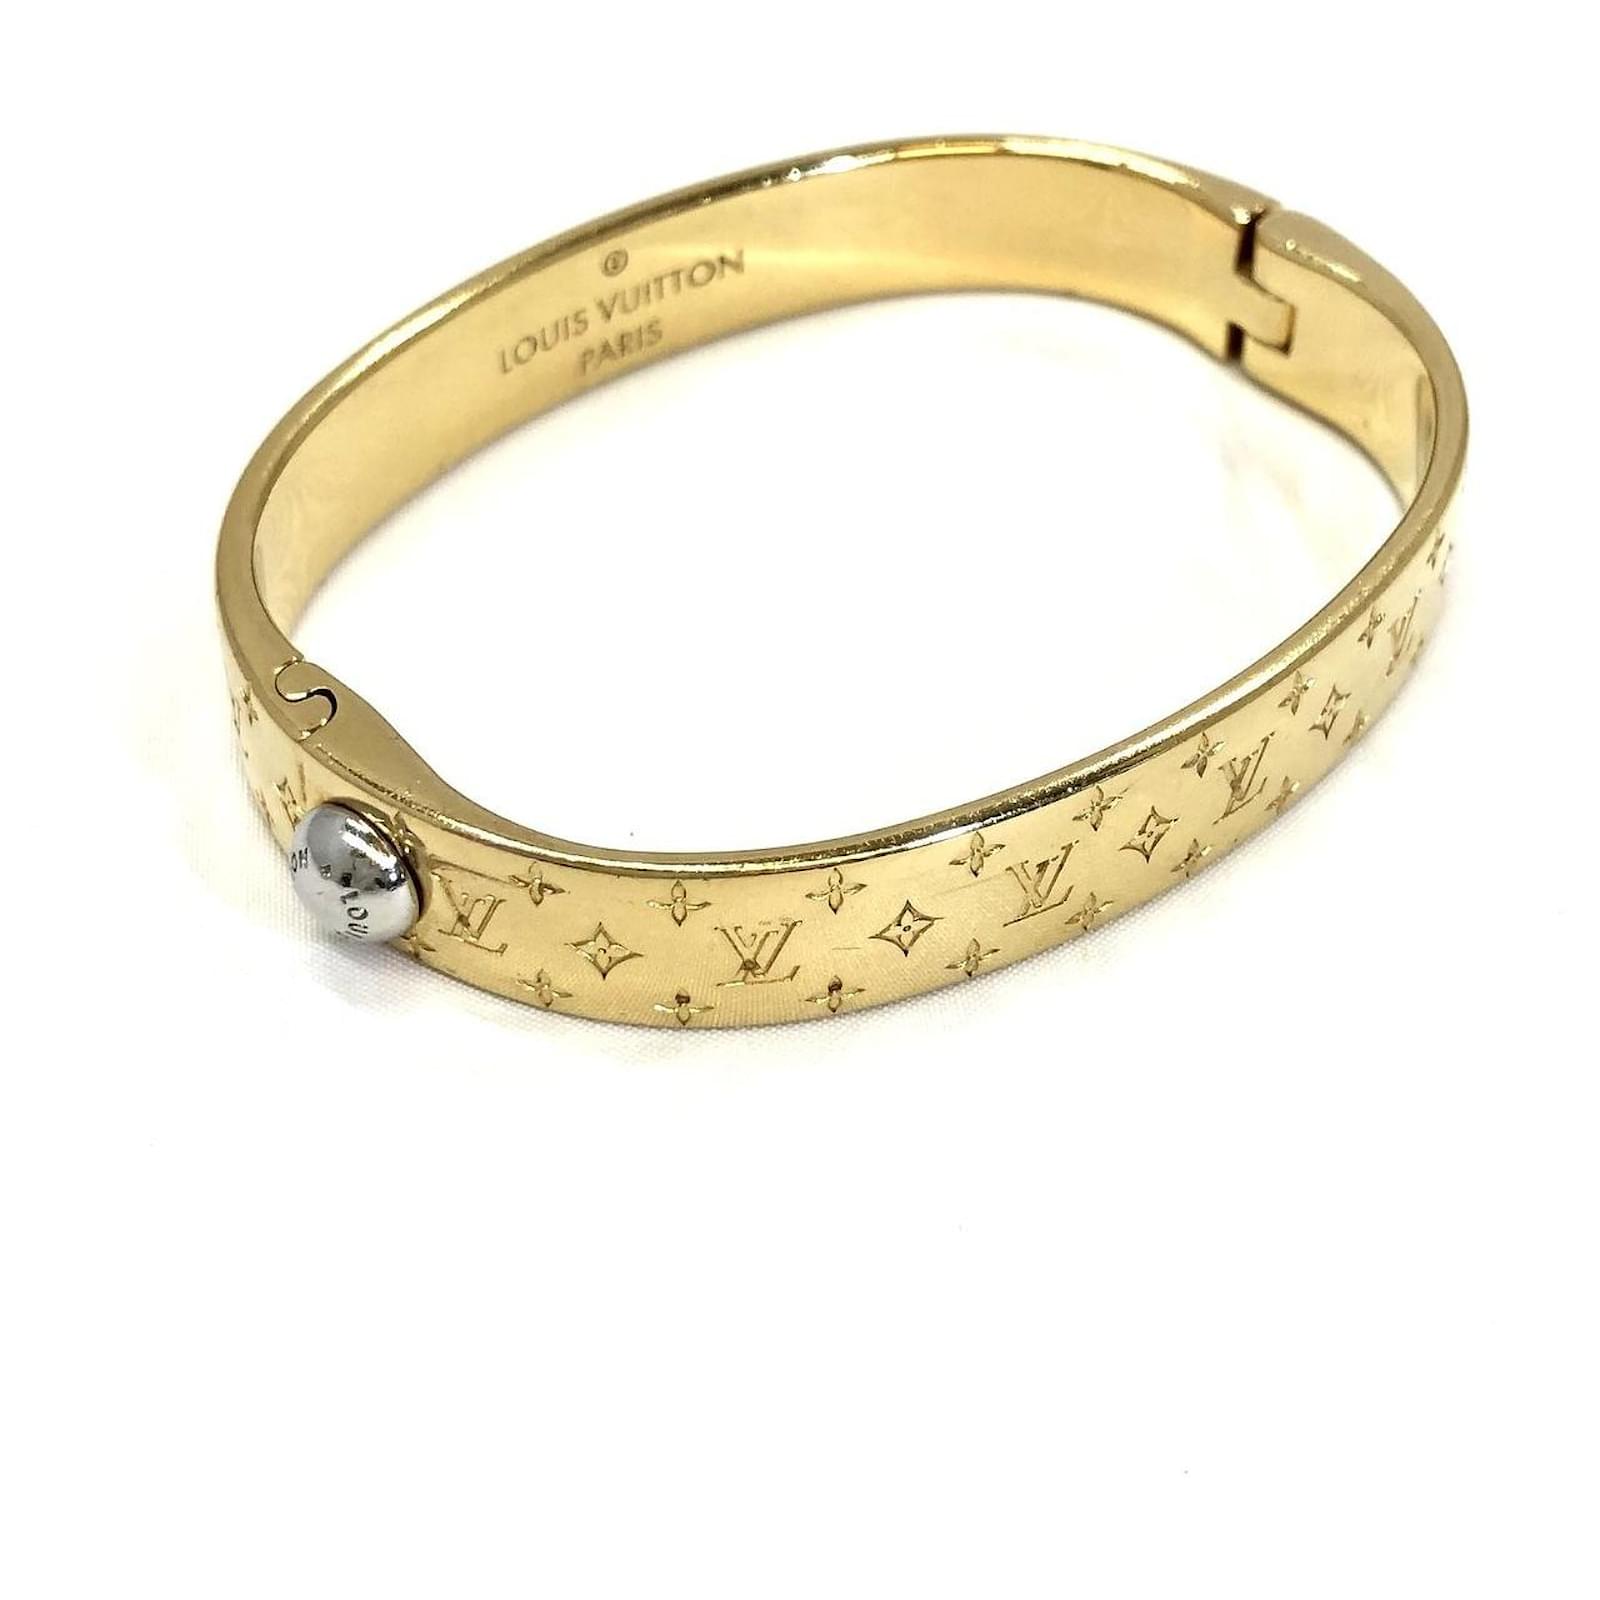 Bracelets Louis vuitton Dorado de en oro y acero - 31643770